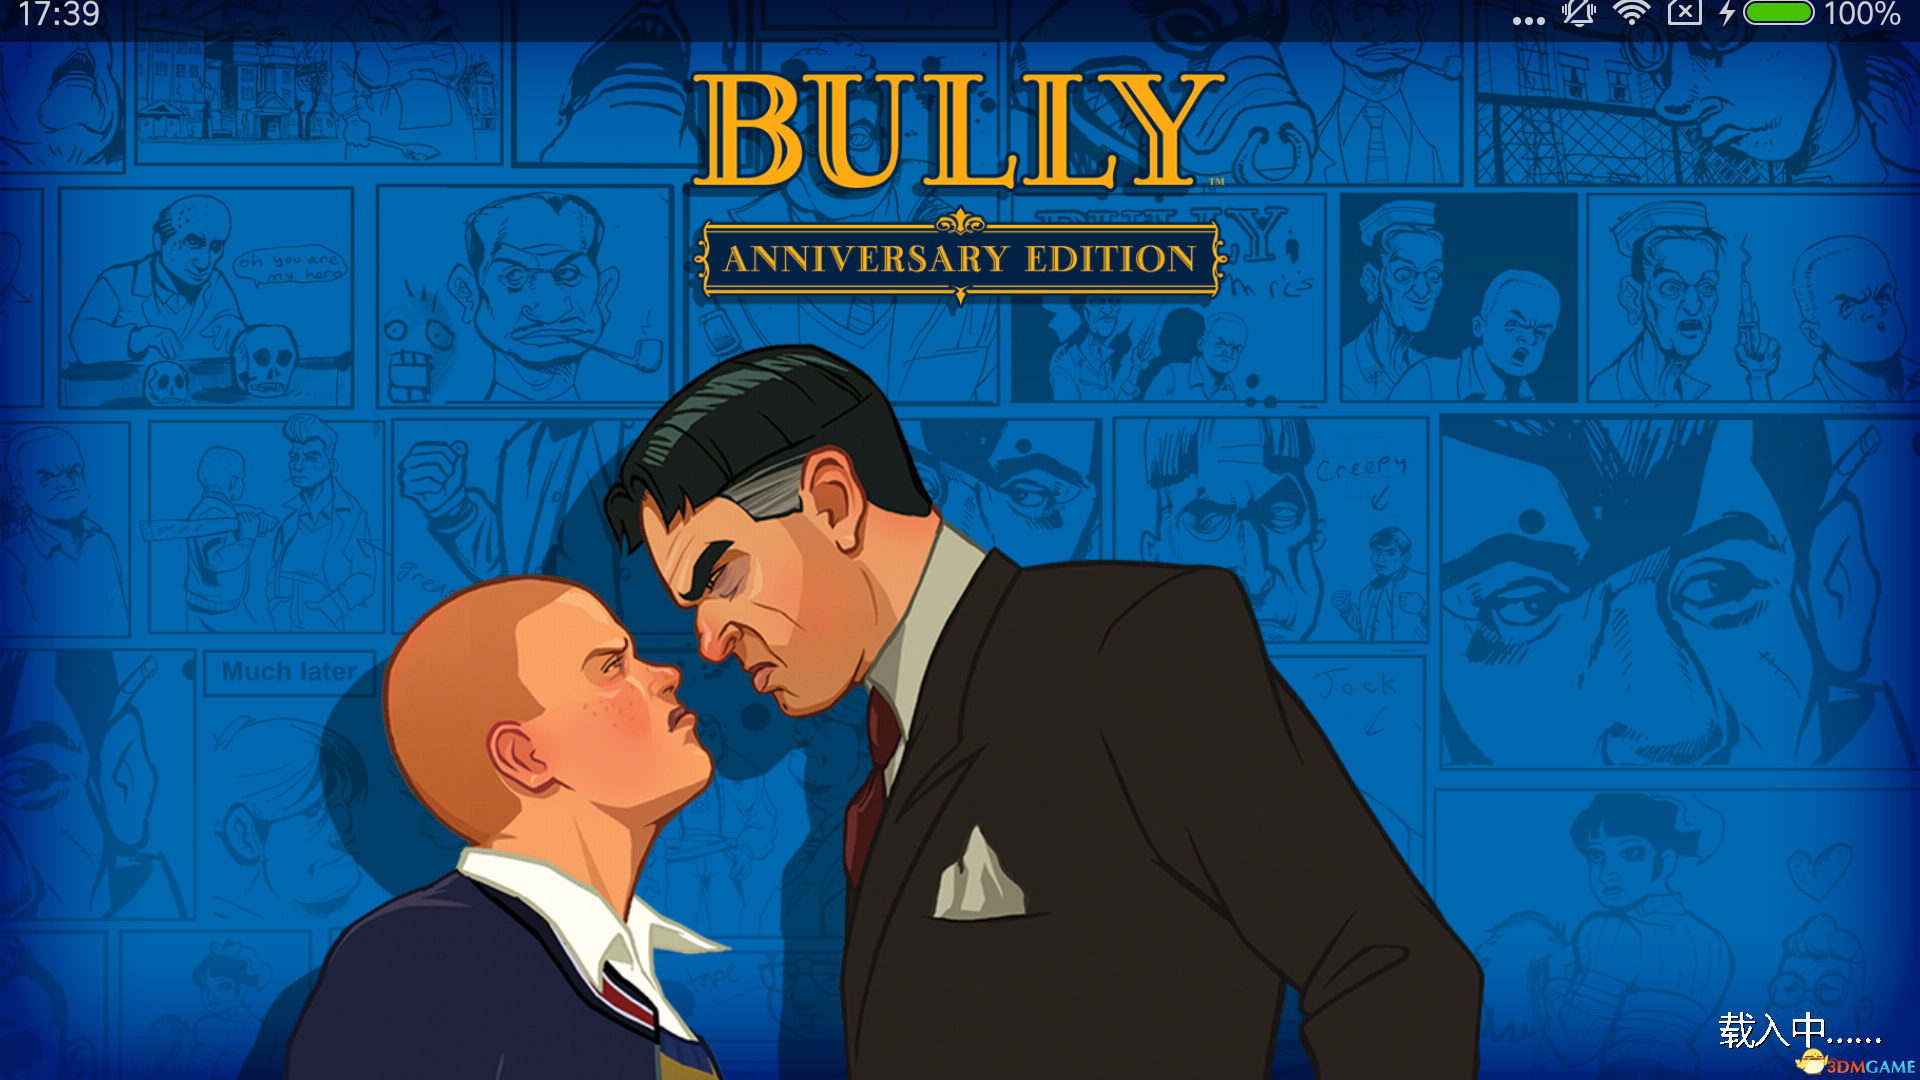 《恶霸鲁尼:周年纪念版 bully: anniversary edition》遗墨汉化组诚意